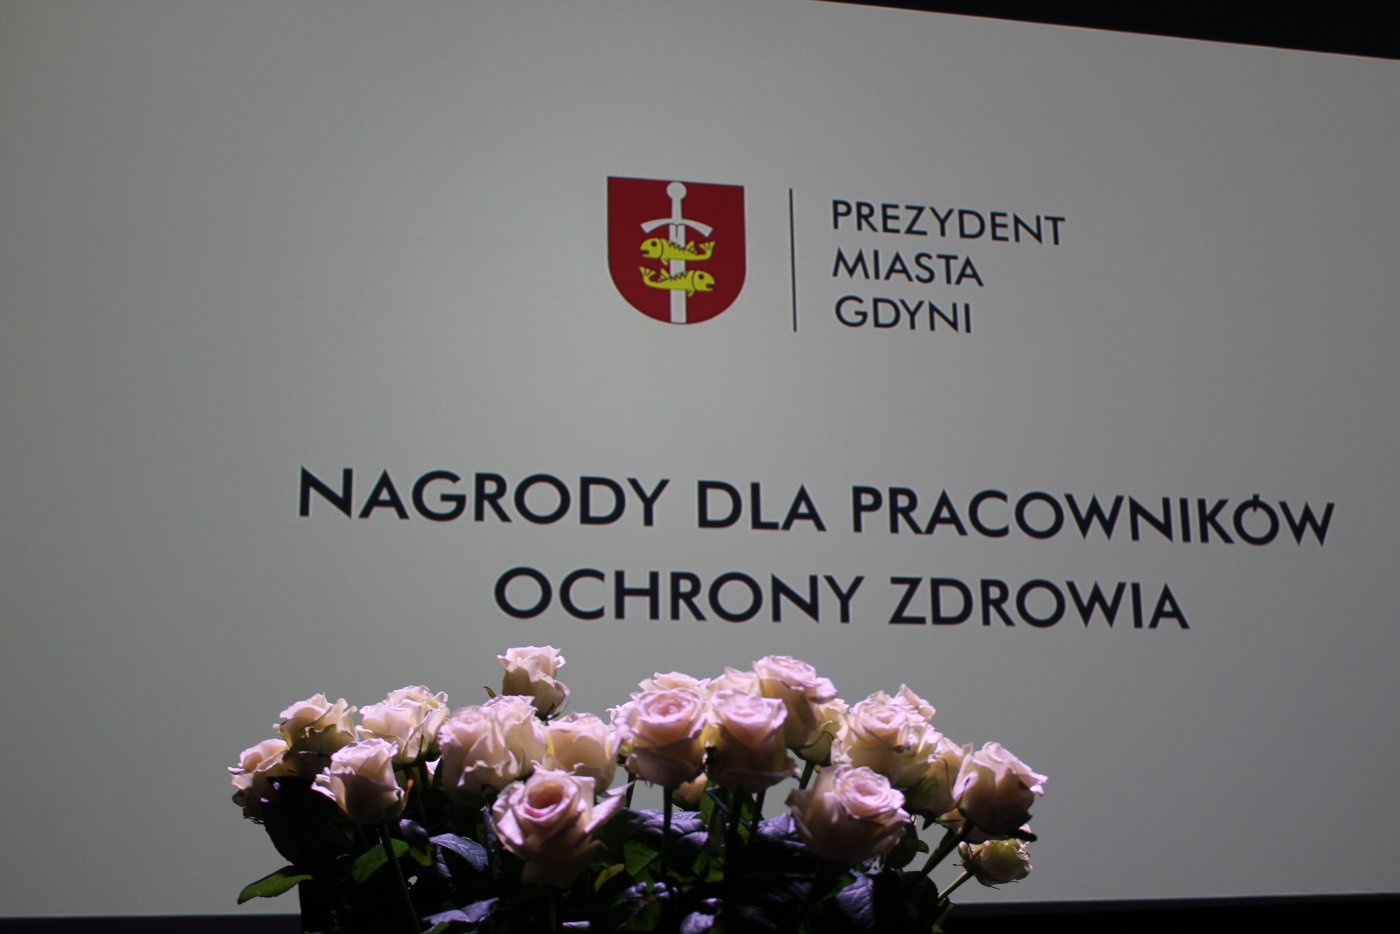 Nagrody Prezydenta Miasta Gdyni dla pracowników ochrony zdrowia